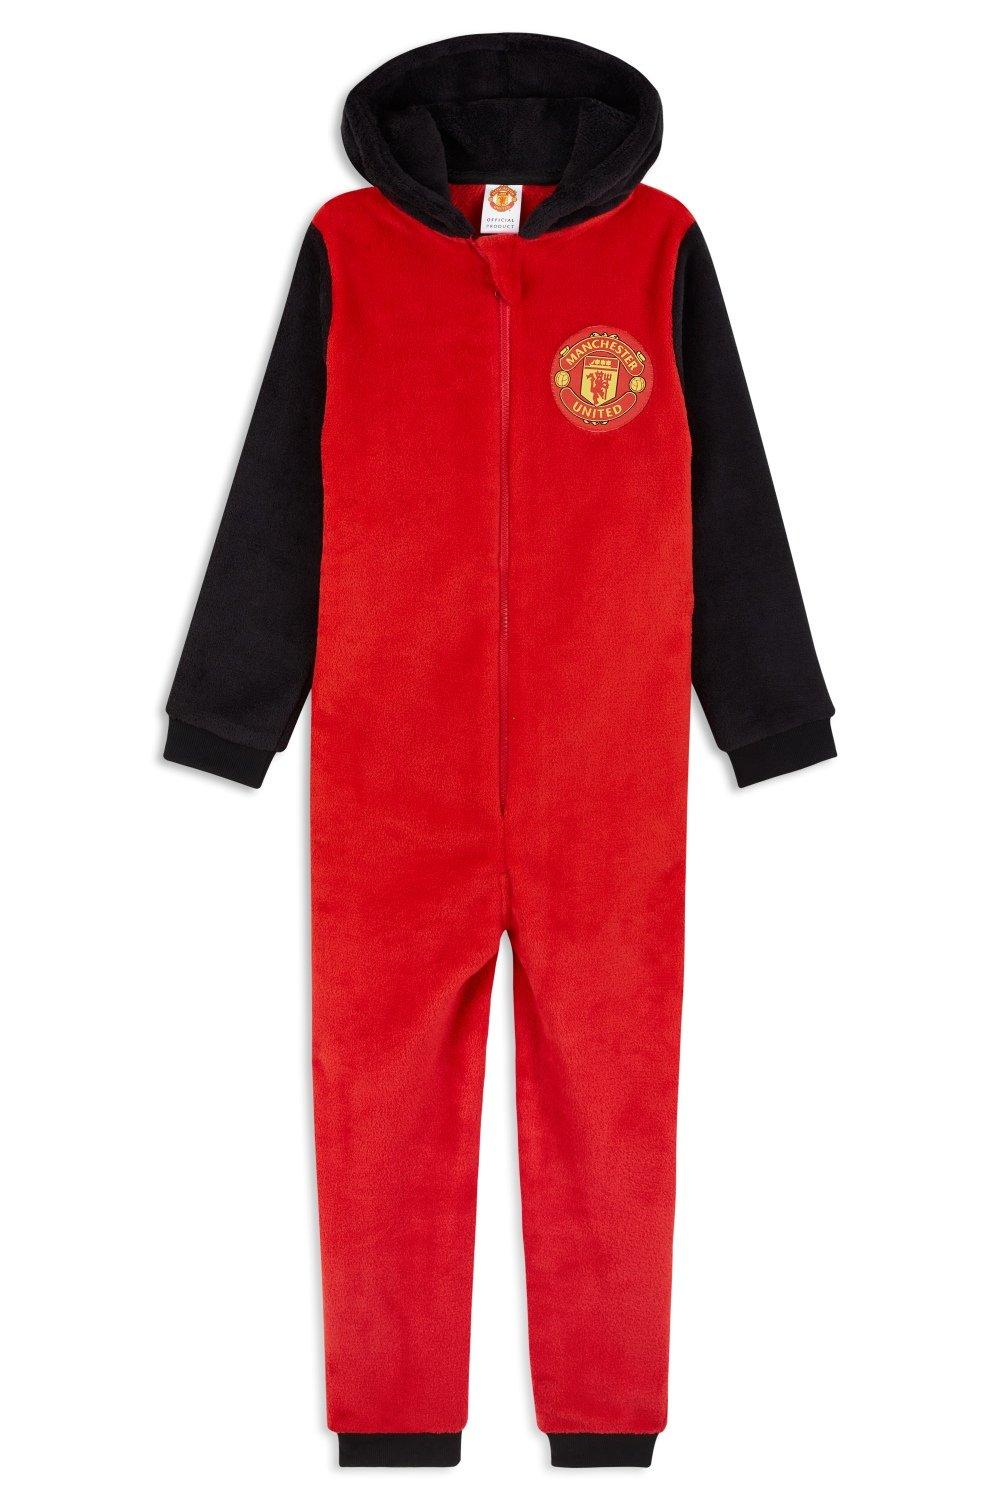 Комбинезон-пижама для дома Manchester United FC, красный спортивная сумка манчестер юнайтед manchester united fc красный